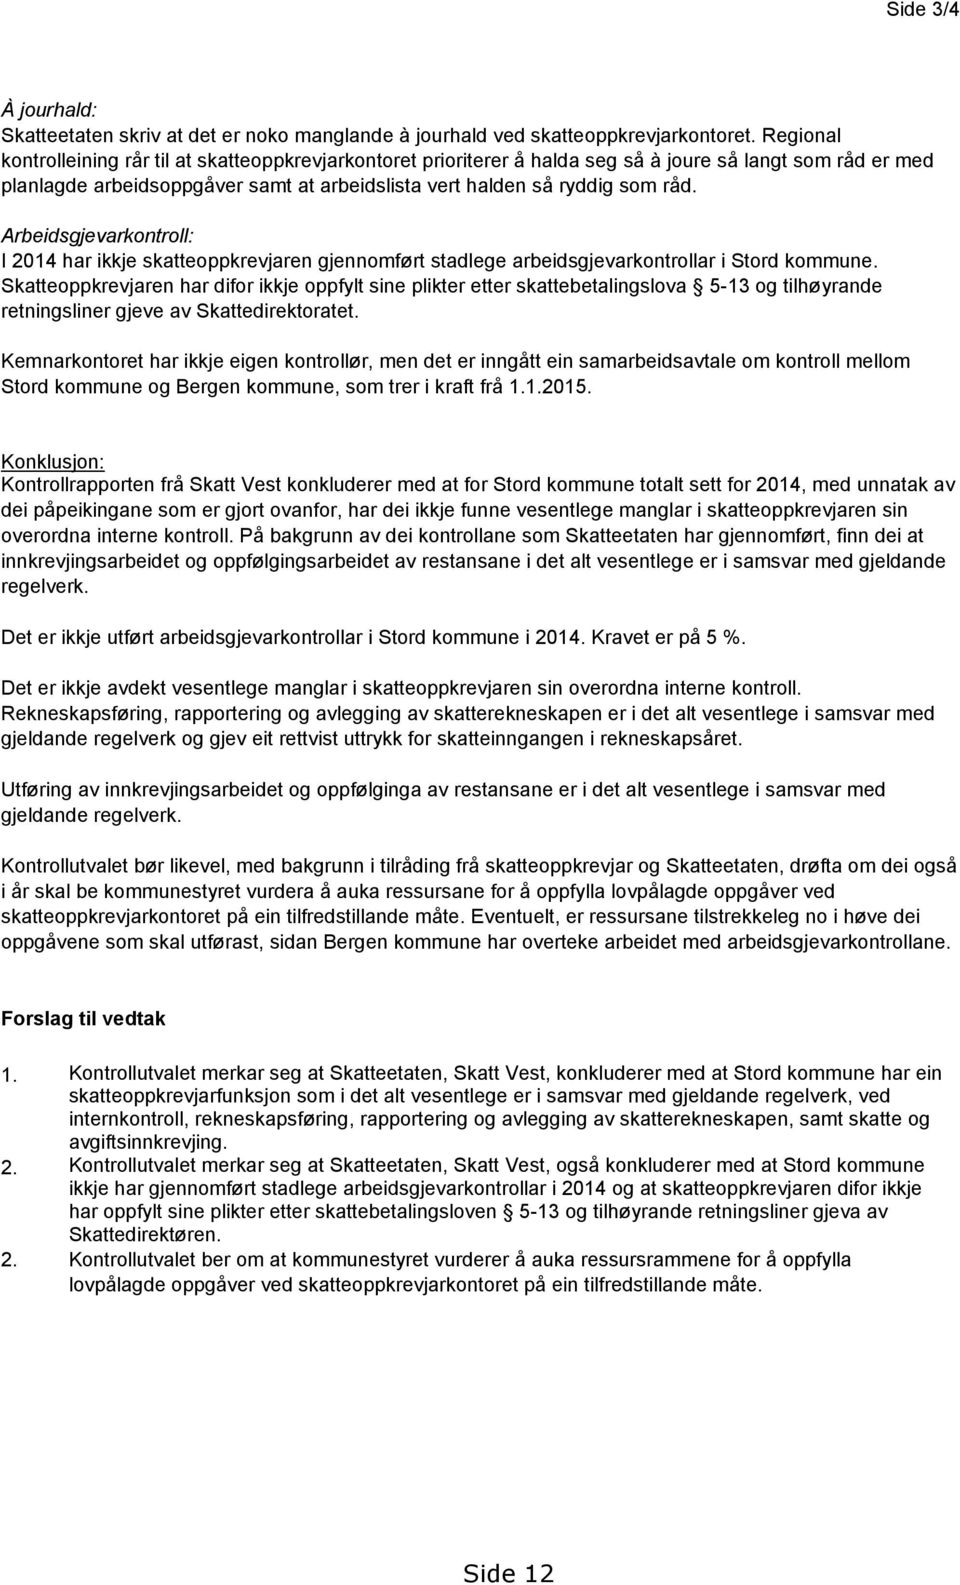 Arbeidsgjevarkontroll: I 2014 har ikkje skatteoppkrevjaren gjennomført stadlege arbeidsgjevarkontrollar i Stord kommune.